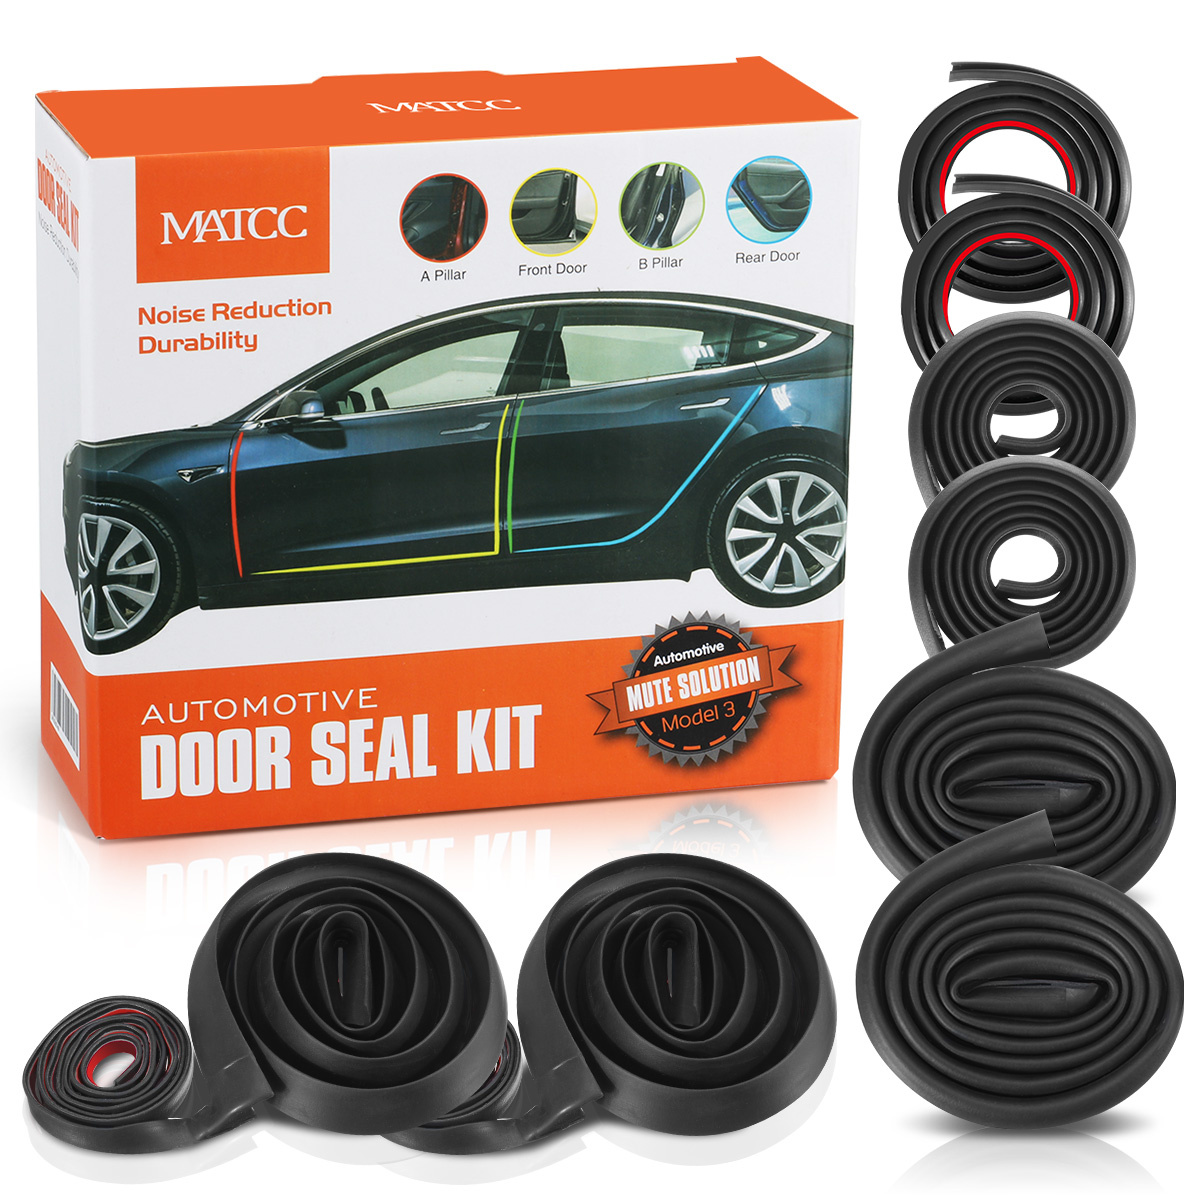 Kit de sello de puerta de coche MATCC para Tesla modelo 3 EPDM autoadhesivo insonorizado accesorios de goma burlete reducción de ruido del viento